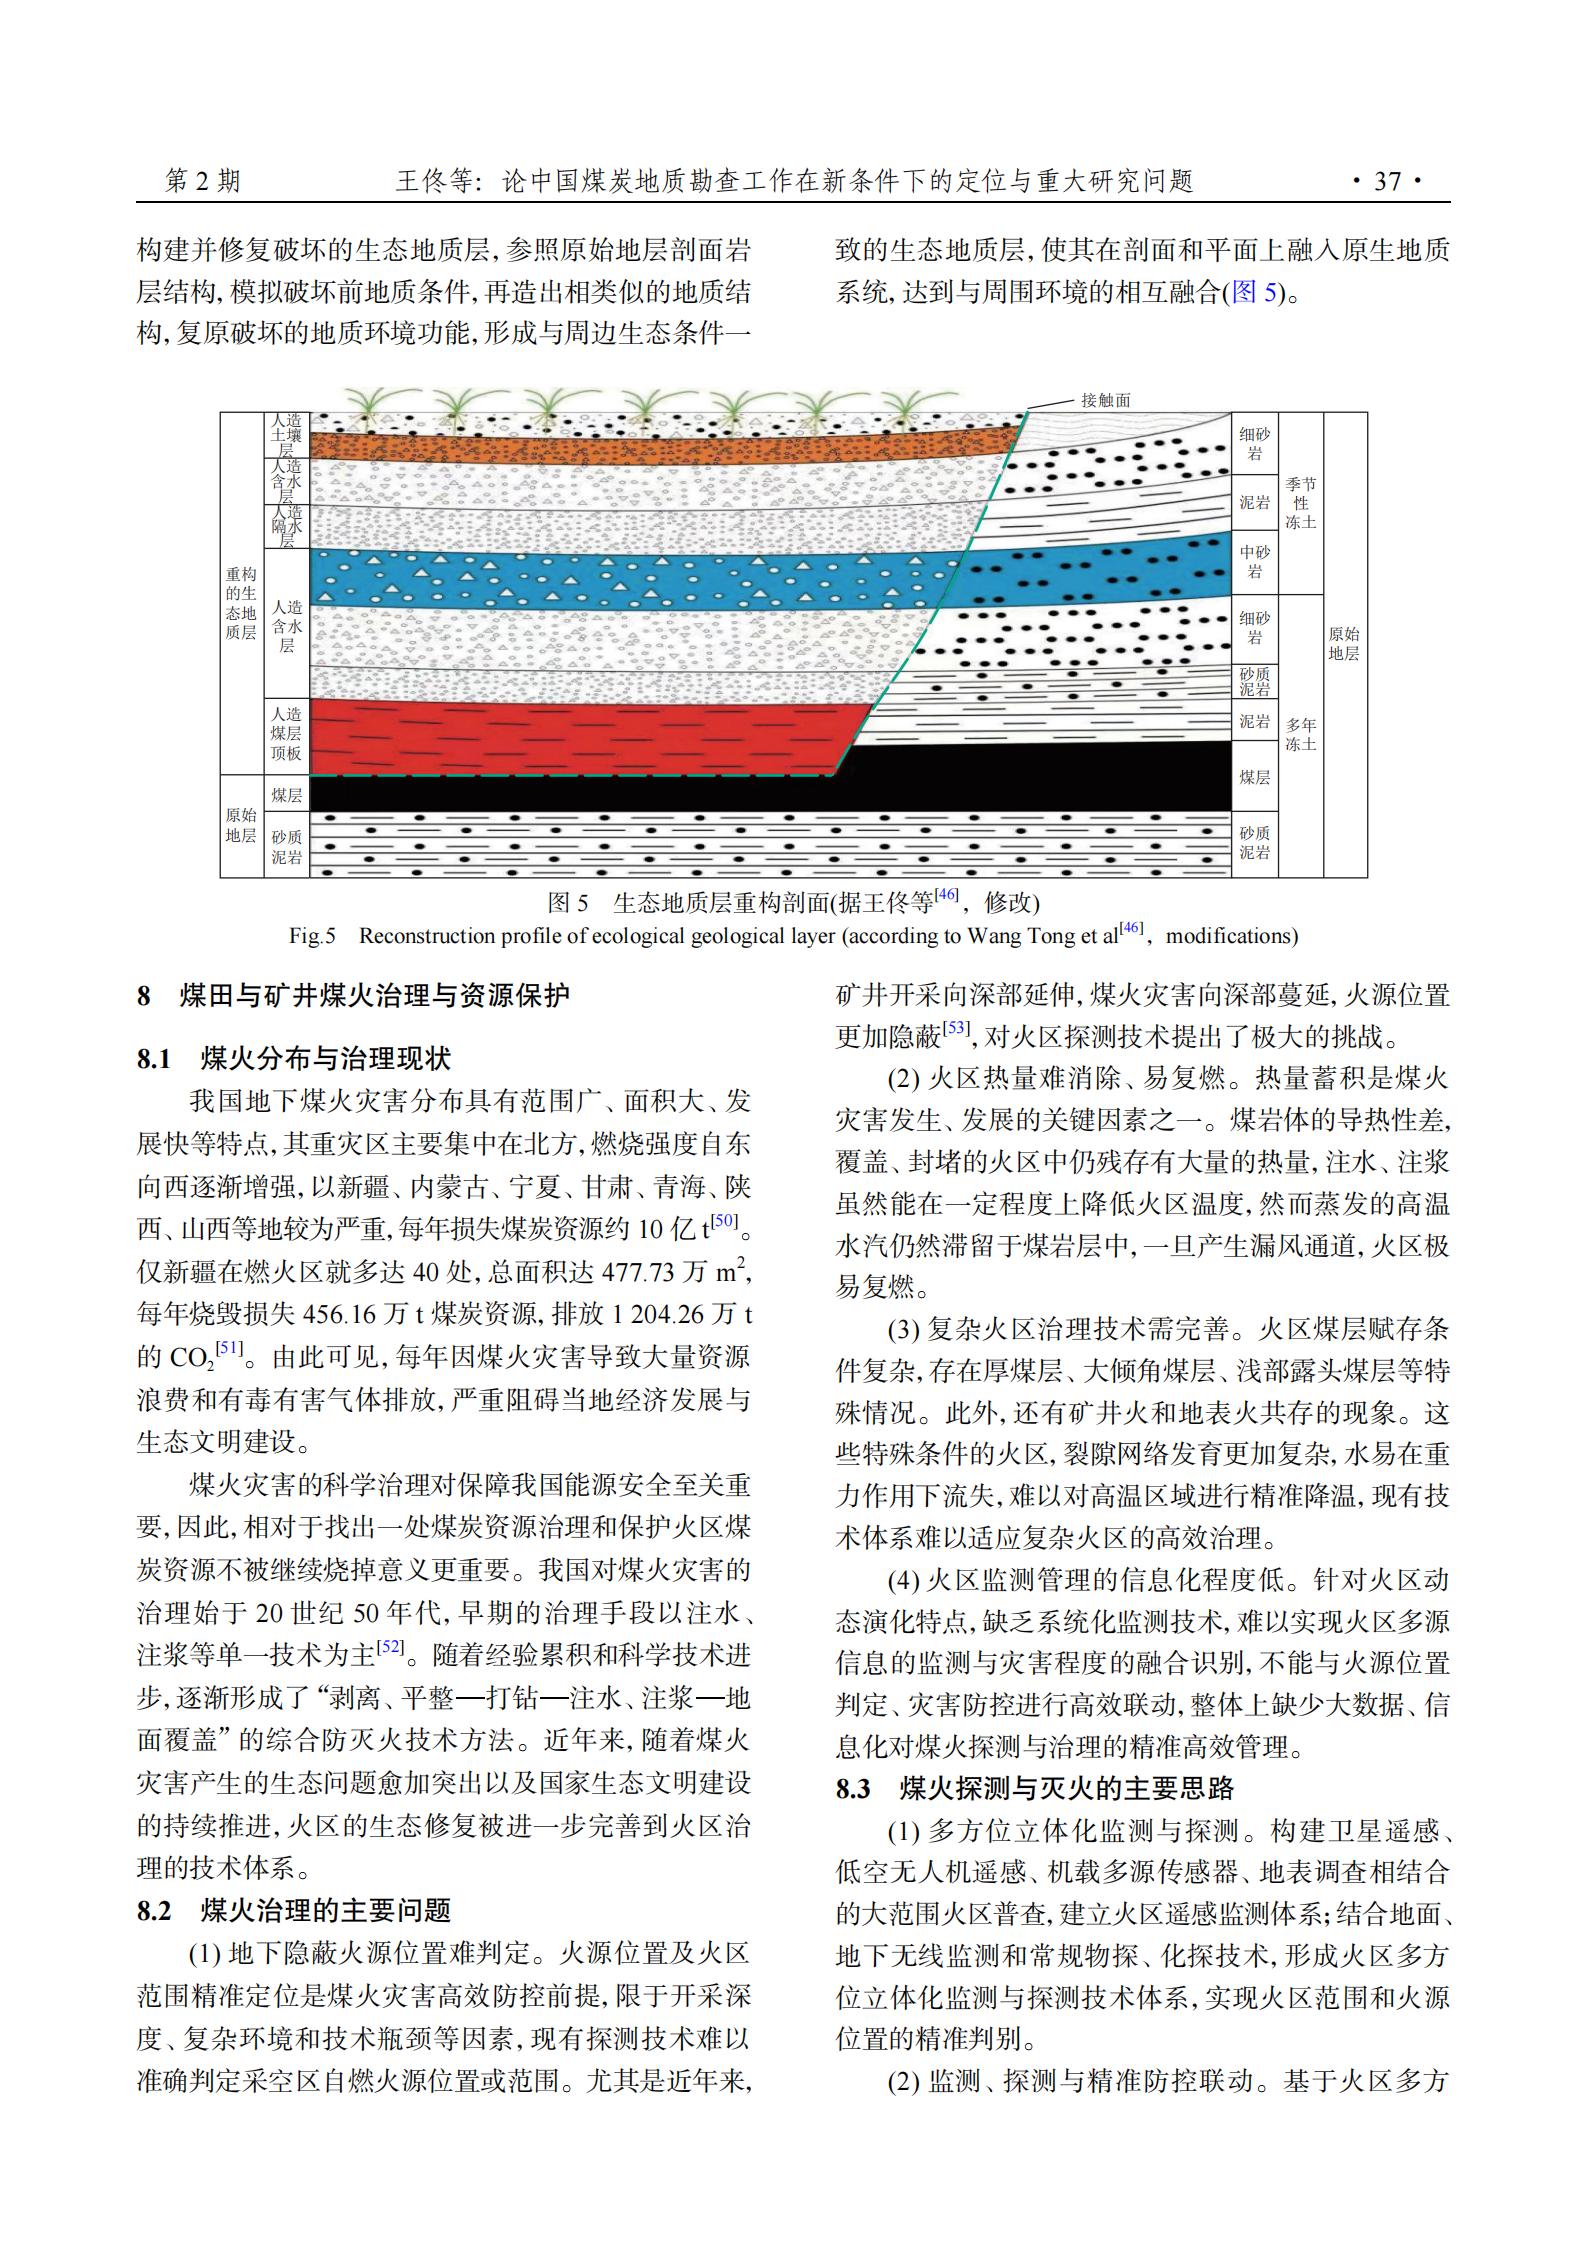 论中国煤炭地质勘查工作在新条件下的定位与重大研究问题_11.jpg